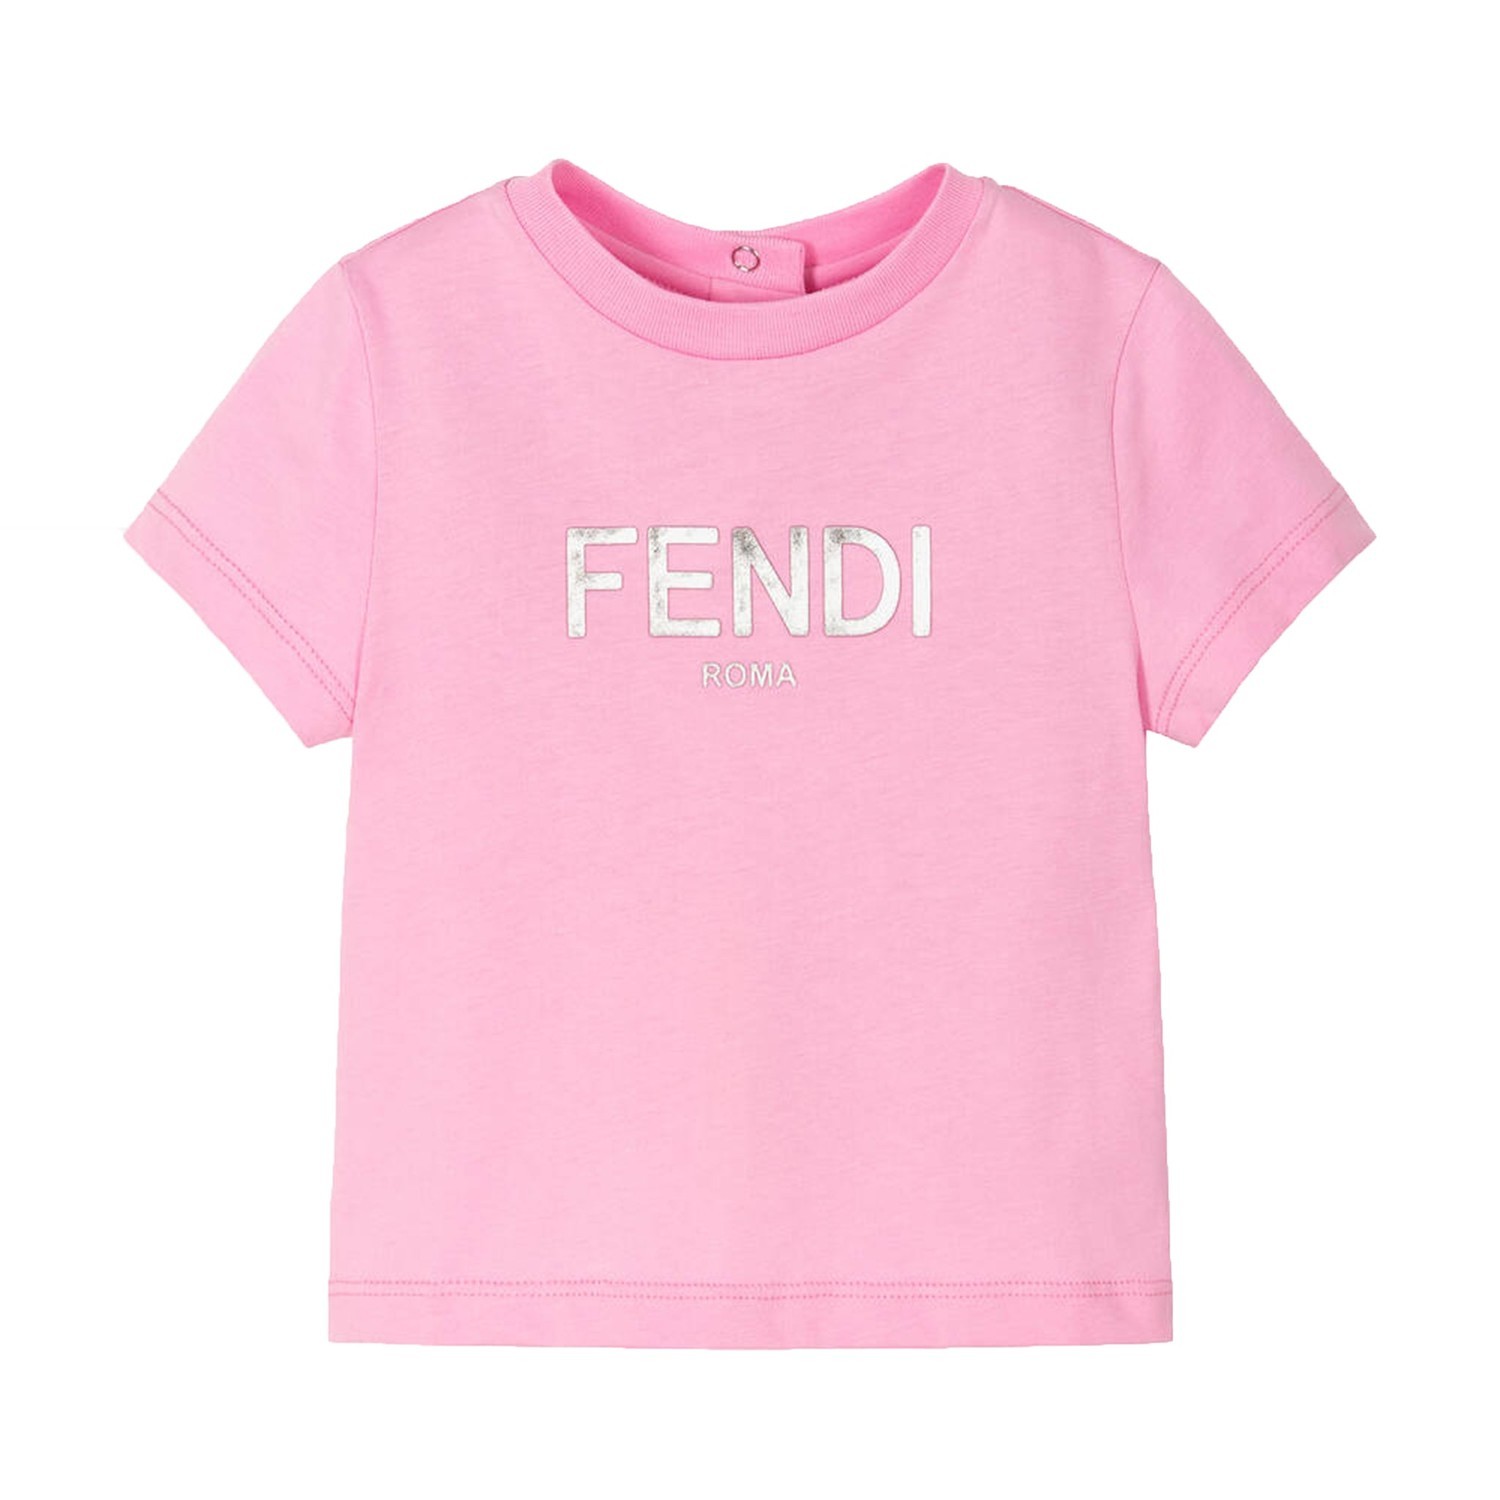 Fendi Baby Girls Logo Print T-shirt Pink 12M